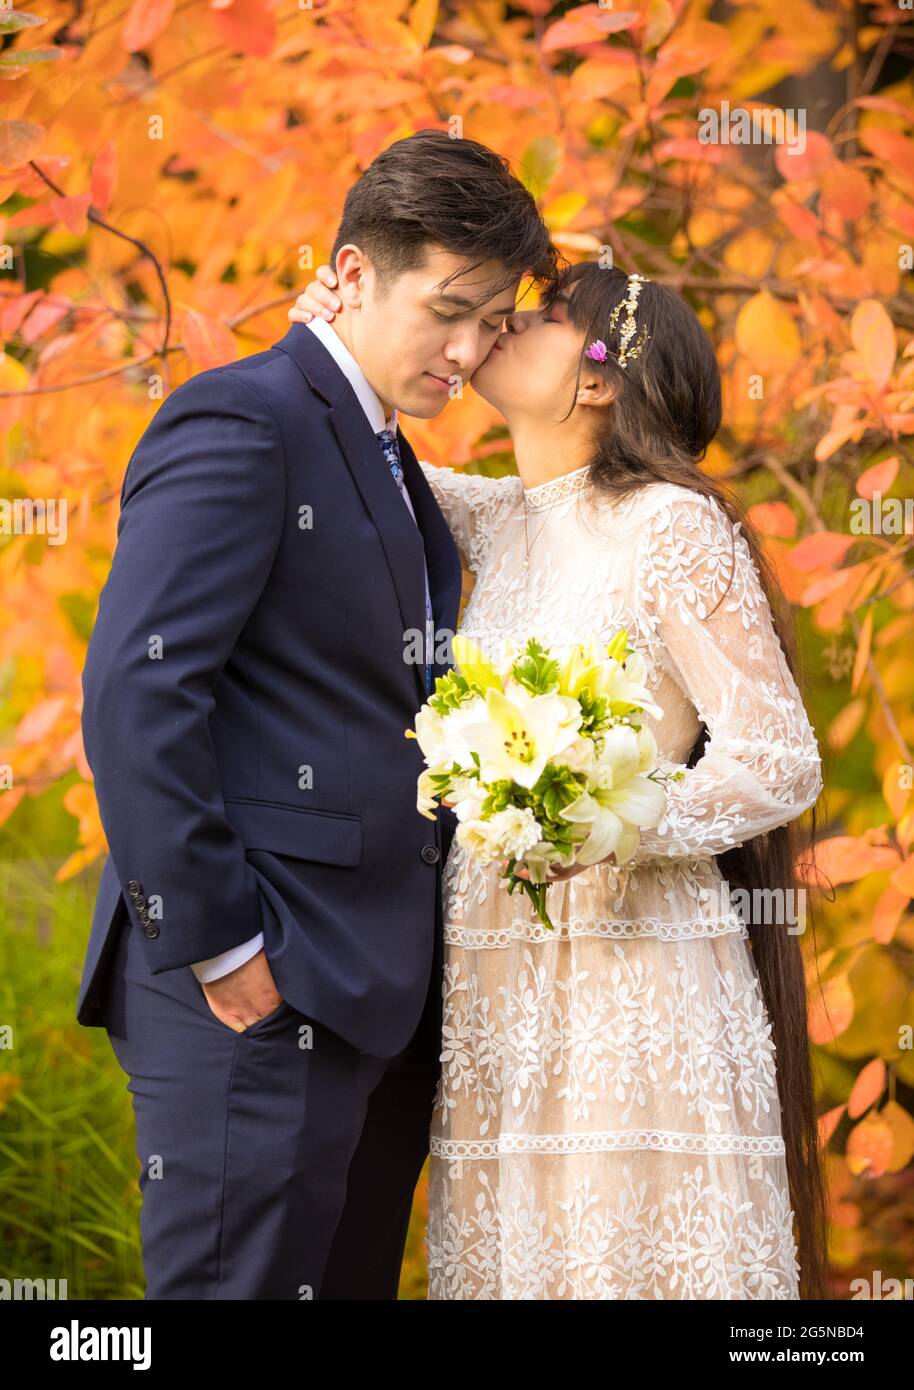 Biracial sposata coppia appena sposata baciando all'aperto da brillanti foglie arancioni d'autunno Foto Stock